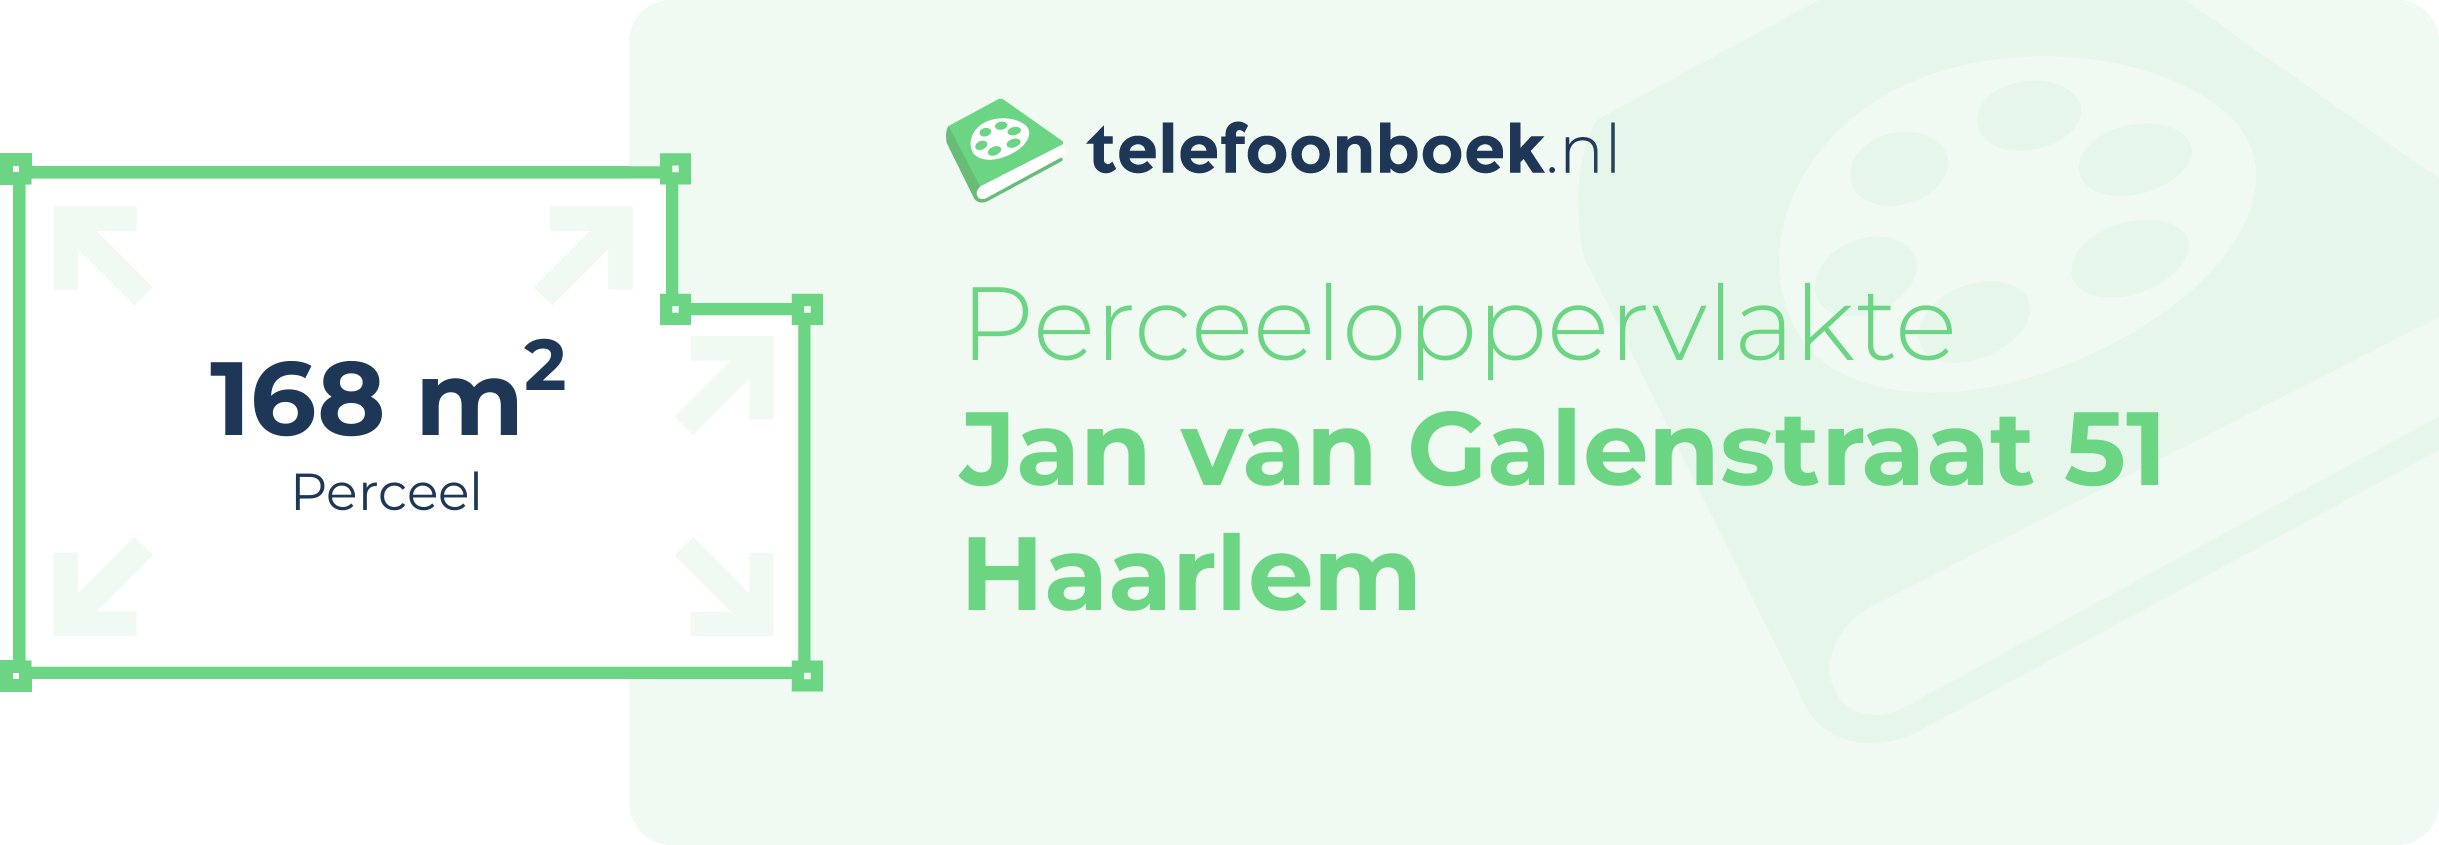 Perceeloppervlakte Jan Van Galenstraat 51 Haarlem